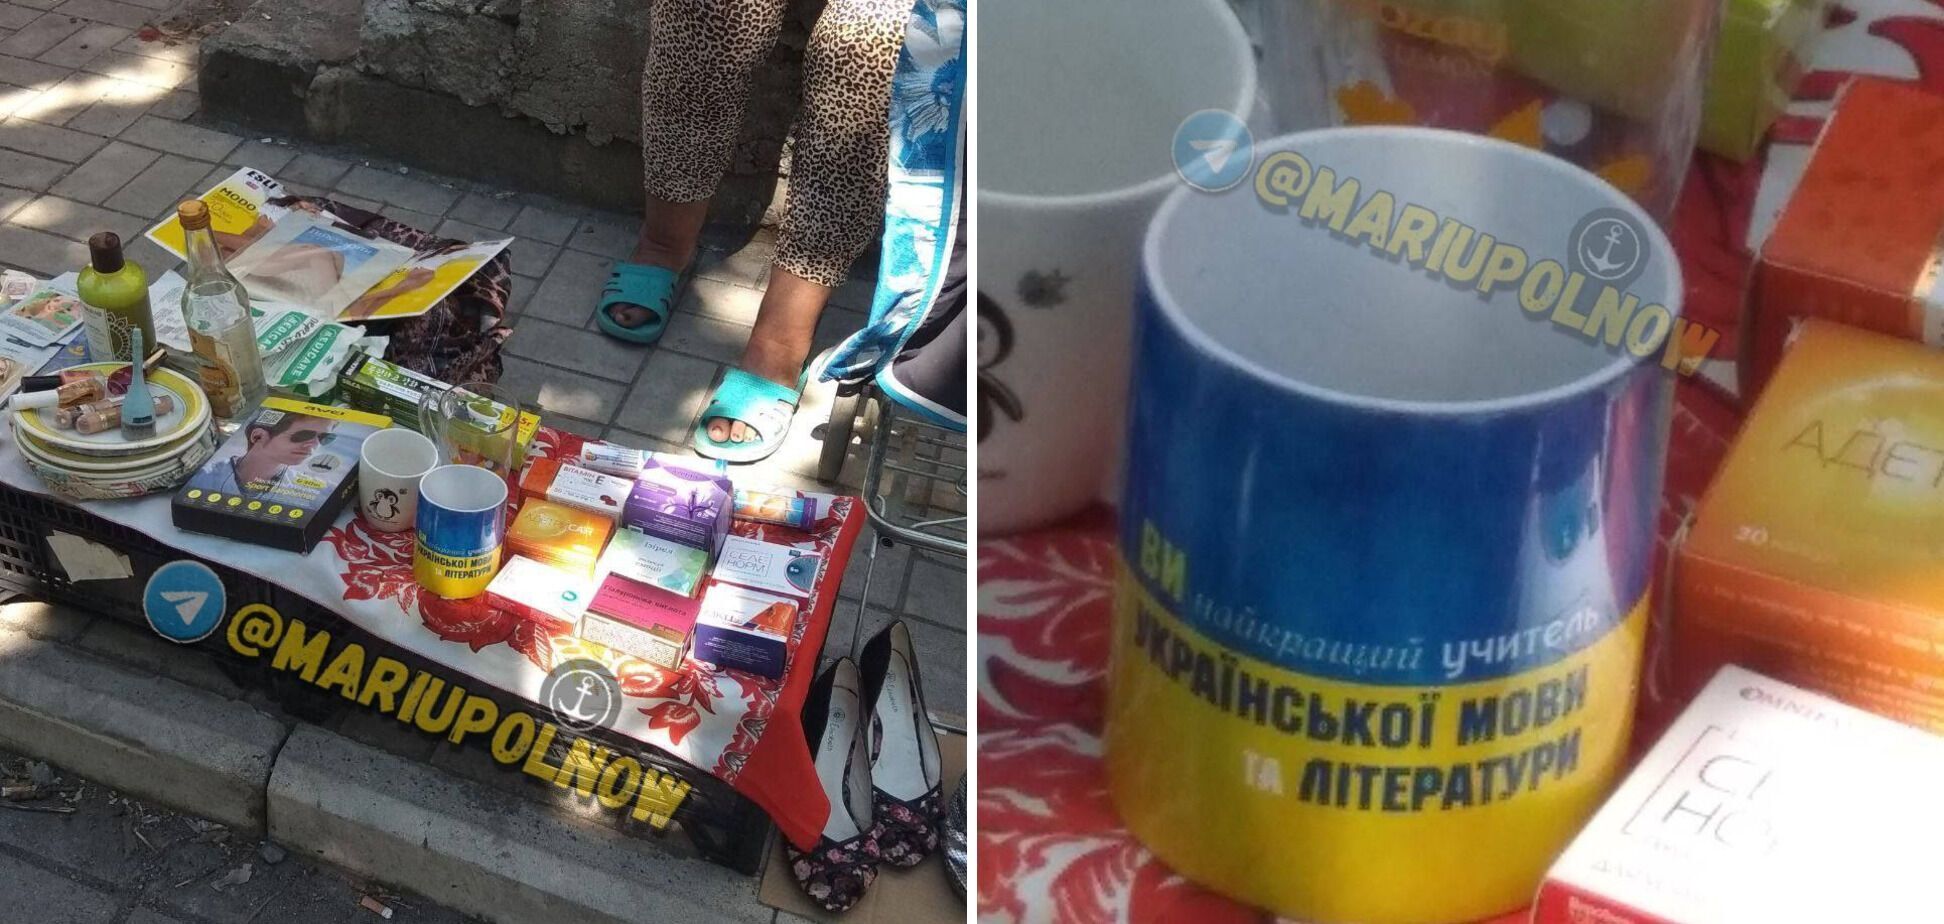 ''Ви найкращий учитель української...'' Фото зі стихійного ринку окупованого Маріуполя зворушило мережу